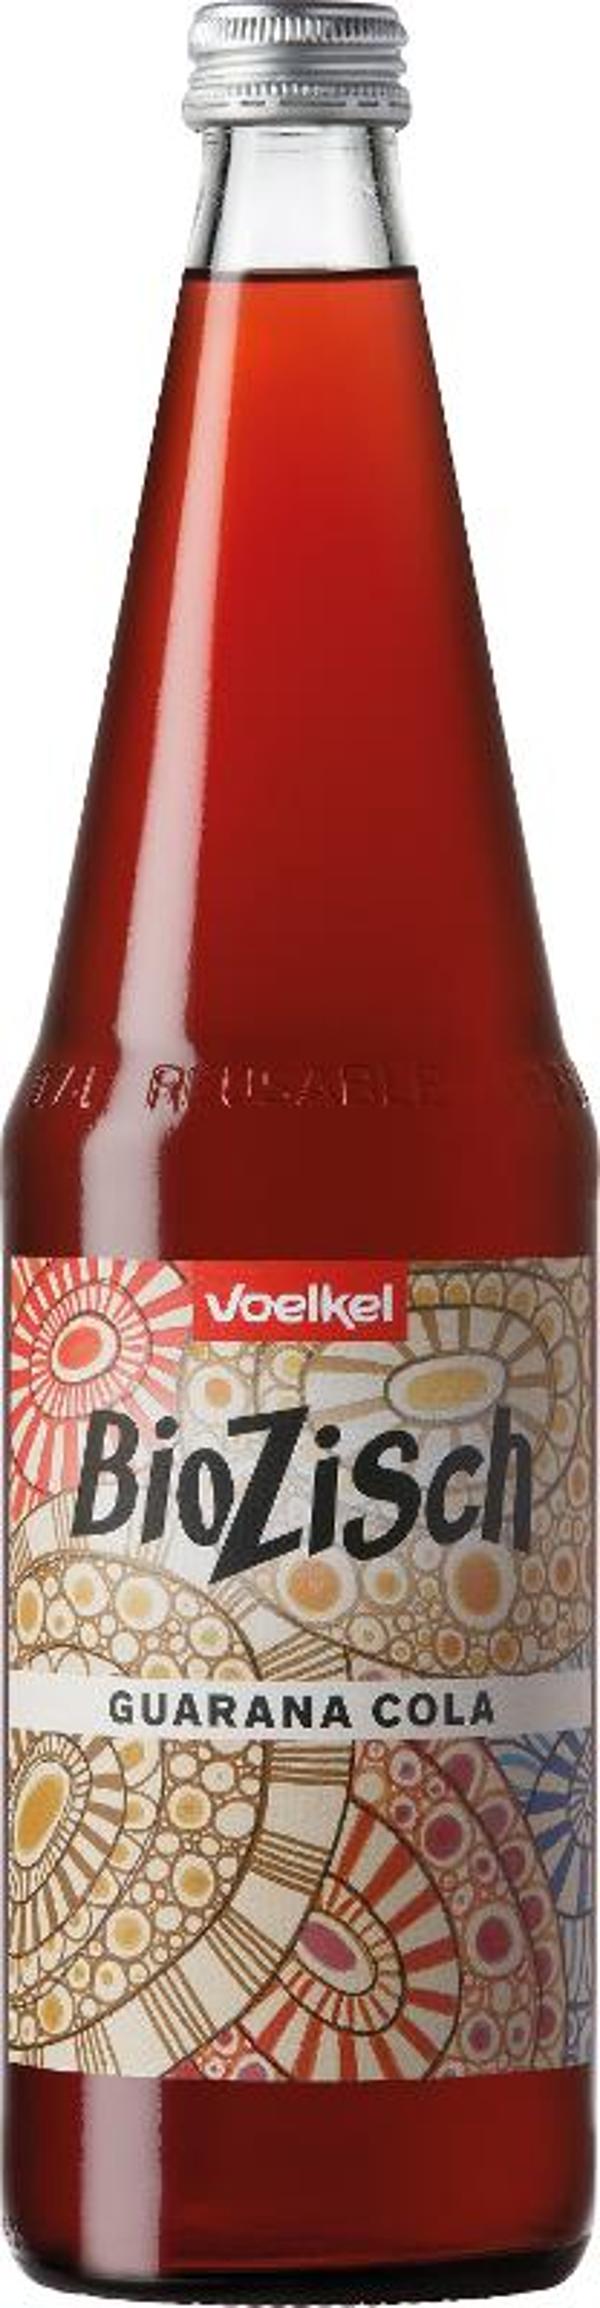 Produktfoto zu VPE BioZisch Guarana Cola 0,7 l  Voelkel